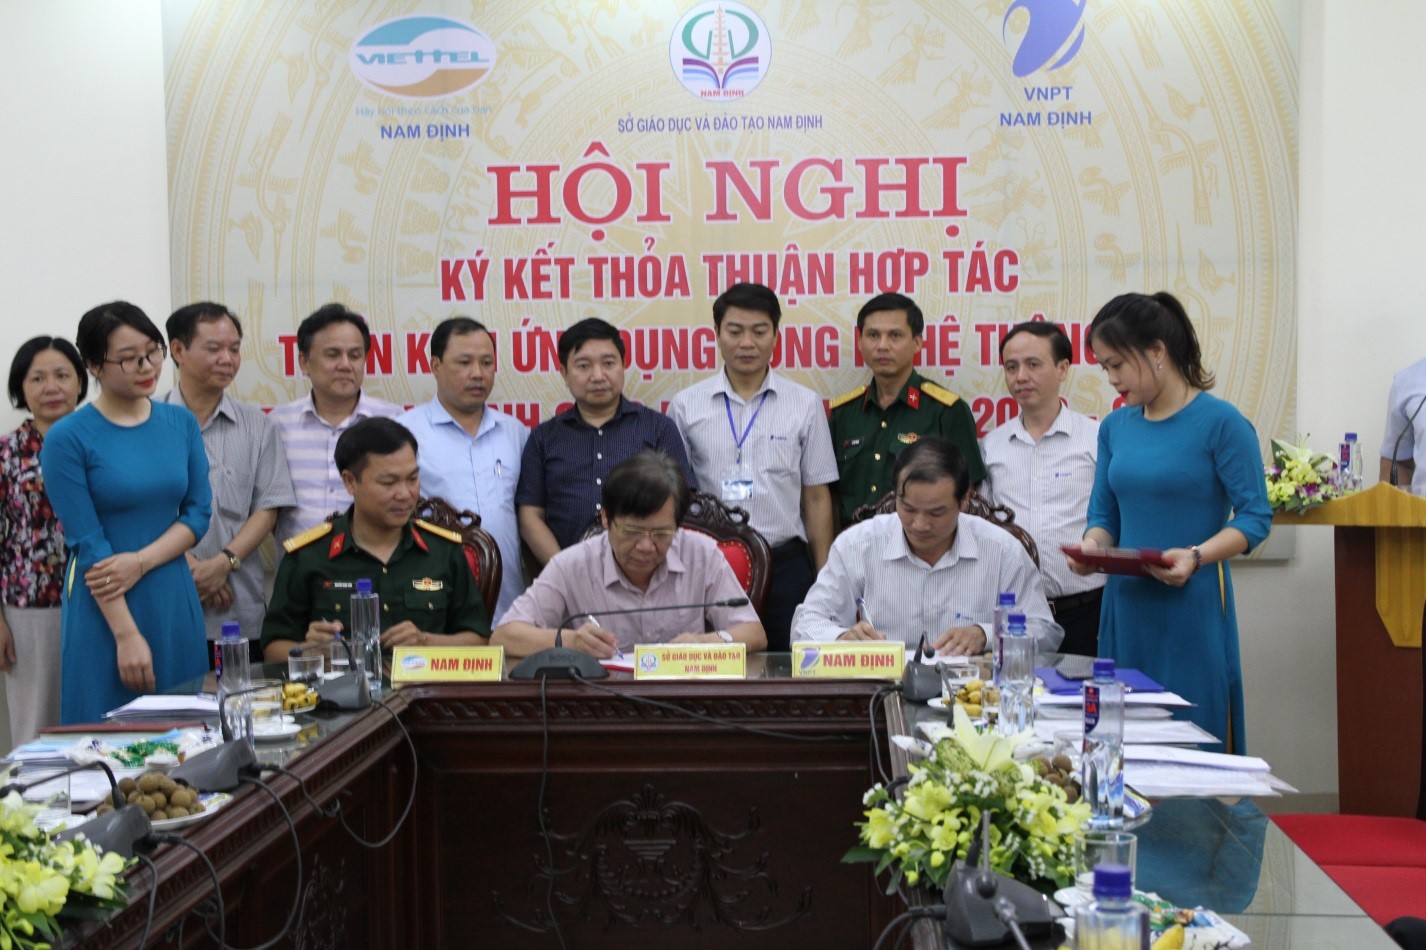 VNPT ký thỏa thuận hợp tác với Sở Giáo dục Đào tạo tỉnh Nam Định